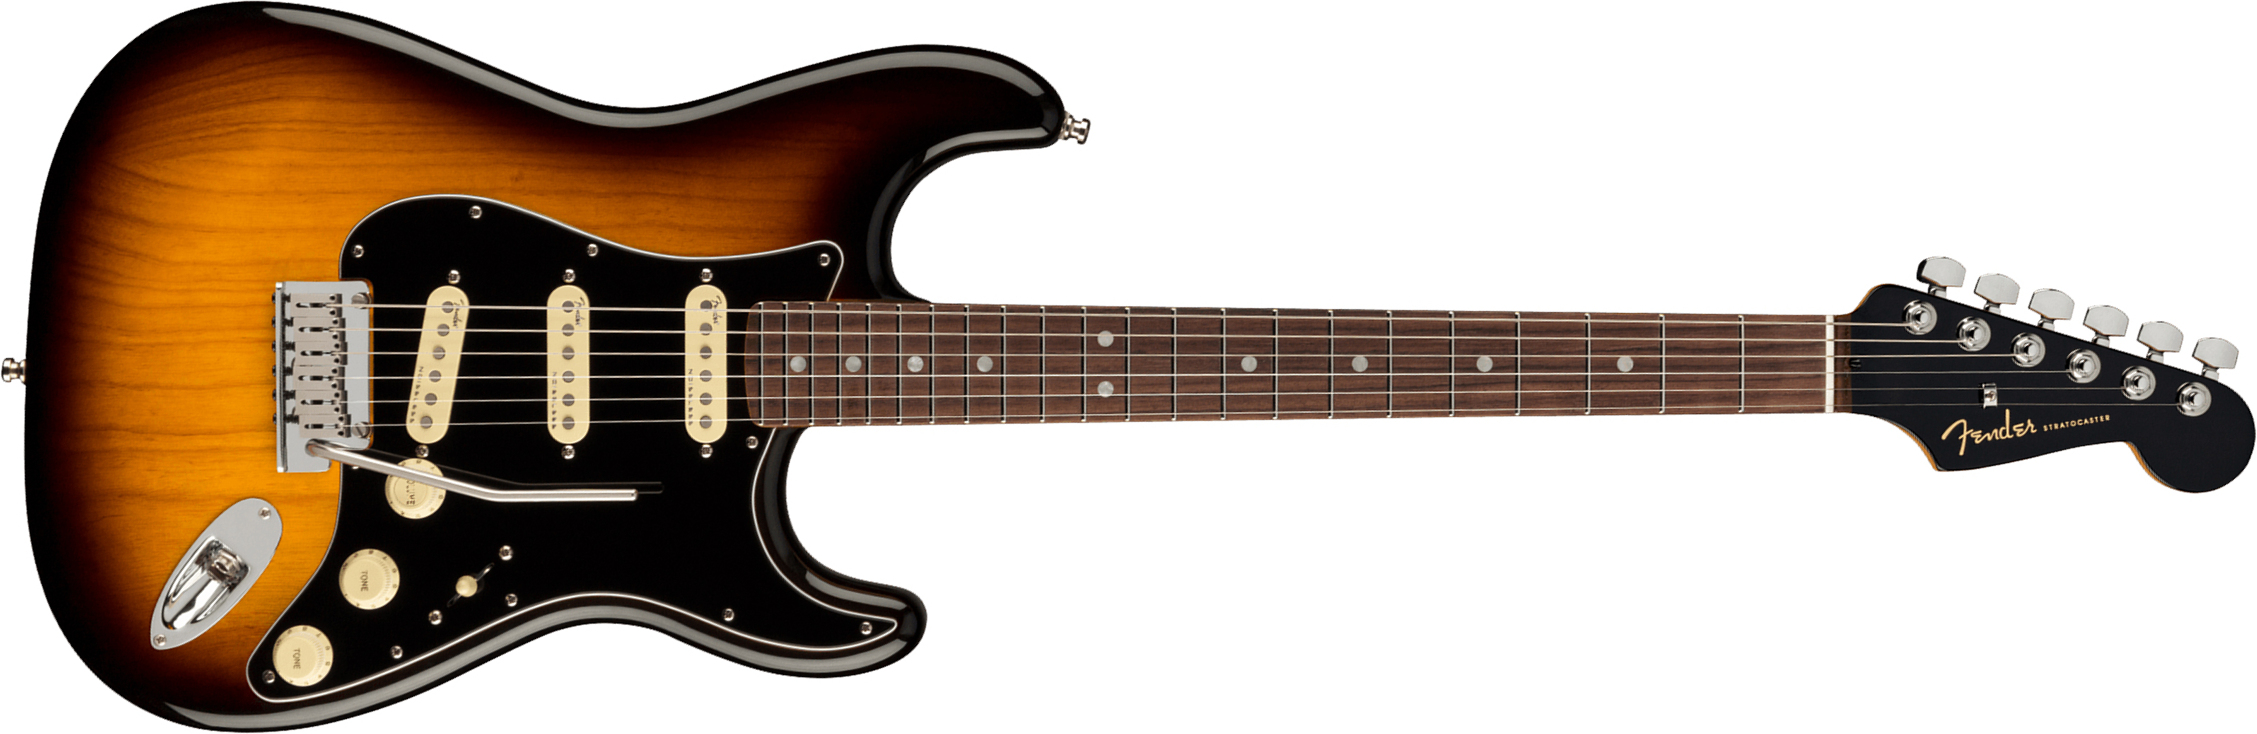 Fender Strat American Ultra Luxe Usa Rw +etui - 2-color Sunburst - Guitarra eléctrica con forma de str. - Main picture